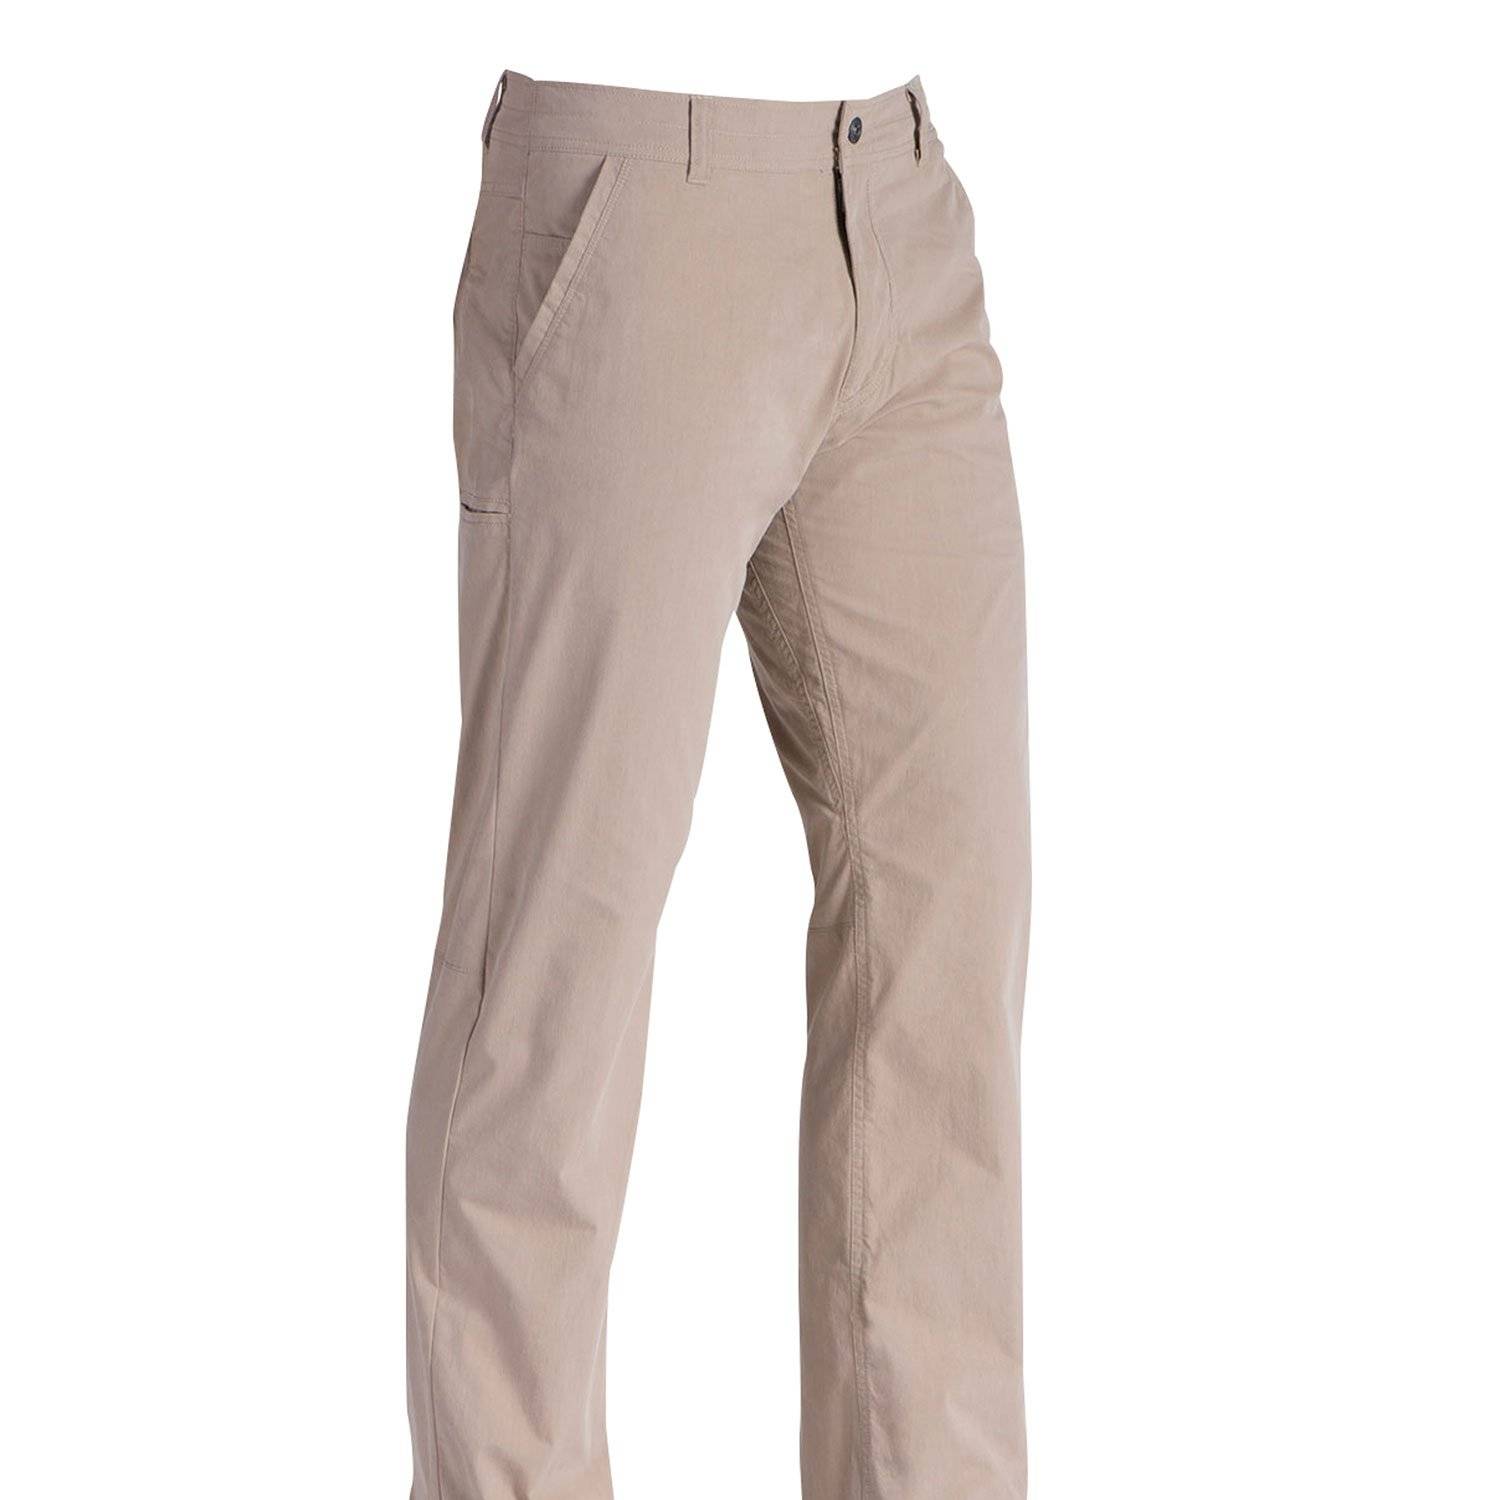 Mens Pants  Suit Pants  Slacks for Men  JCPenney